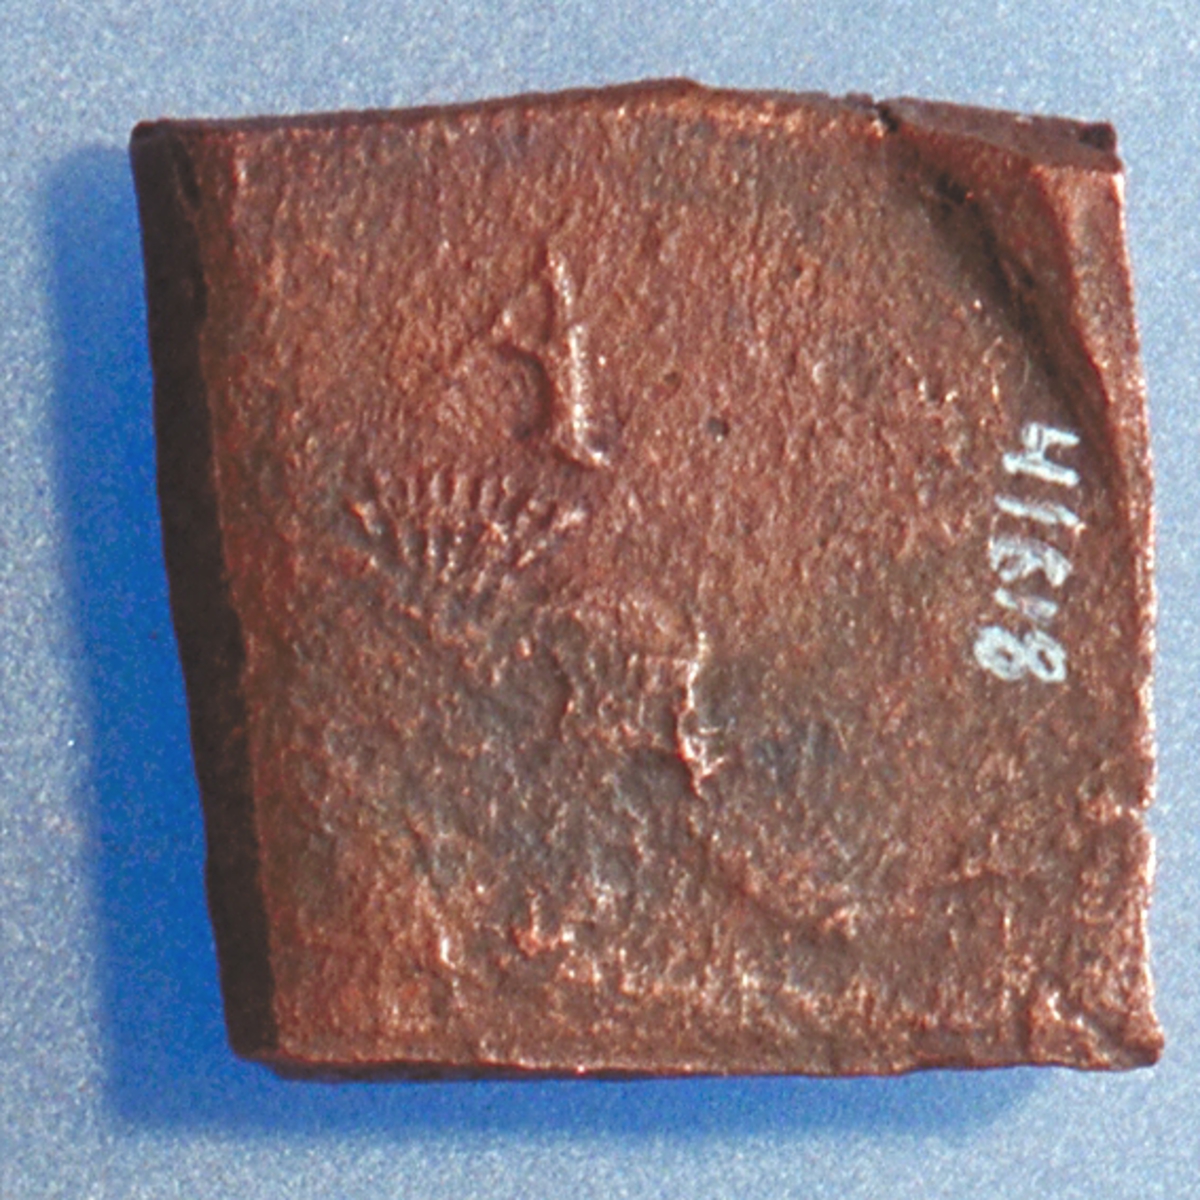 Ett fyrkantigt kopparmynt, s k klipping, med valören Â½ öre.
På myntets åtsida är en vasakärve delvis synlig. Ovanför kärven är versalen A svagt synlig. Åtsidans prägling är ocentrerad.

På myntets frånsida är två korsade pilar delvis synliga. Till vänster om pilarna är valören Â½ svagt synlig.
Längst ner på myntet syns sifforna 24, vilket står för präglingsåret 1624. Frånsidans prägling är ocentrerad.
Myntets vikt uppgår till 11,8 gram.
Myntets bägge sidor är slitna.

Text in English: Square-shaped coin. Denomination: Â½ - öre.
The obverse side has a Vasa sheaf in the centre, partly visible. The initial A appear in capital letter, faintly legible A placed above the sheaf.
The coin stamp is off-centre.
The reverse side has two crossed arrows, faintly legible. On the left hand side is the fraction Â½, faintly  visible.
The two digit year of coinage, 24 (1624), is placed beneath the arrows.
The coin stamp is off-centre.

Present condition: both sides are worn.
Weight: 11,8 gram.